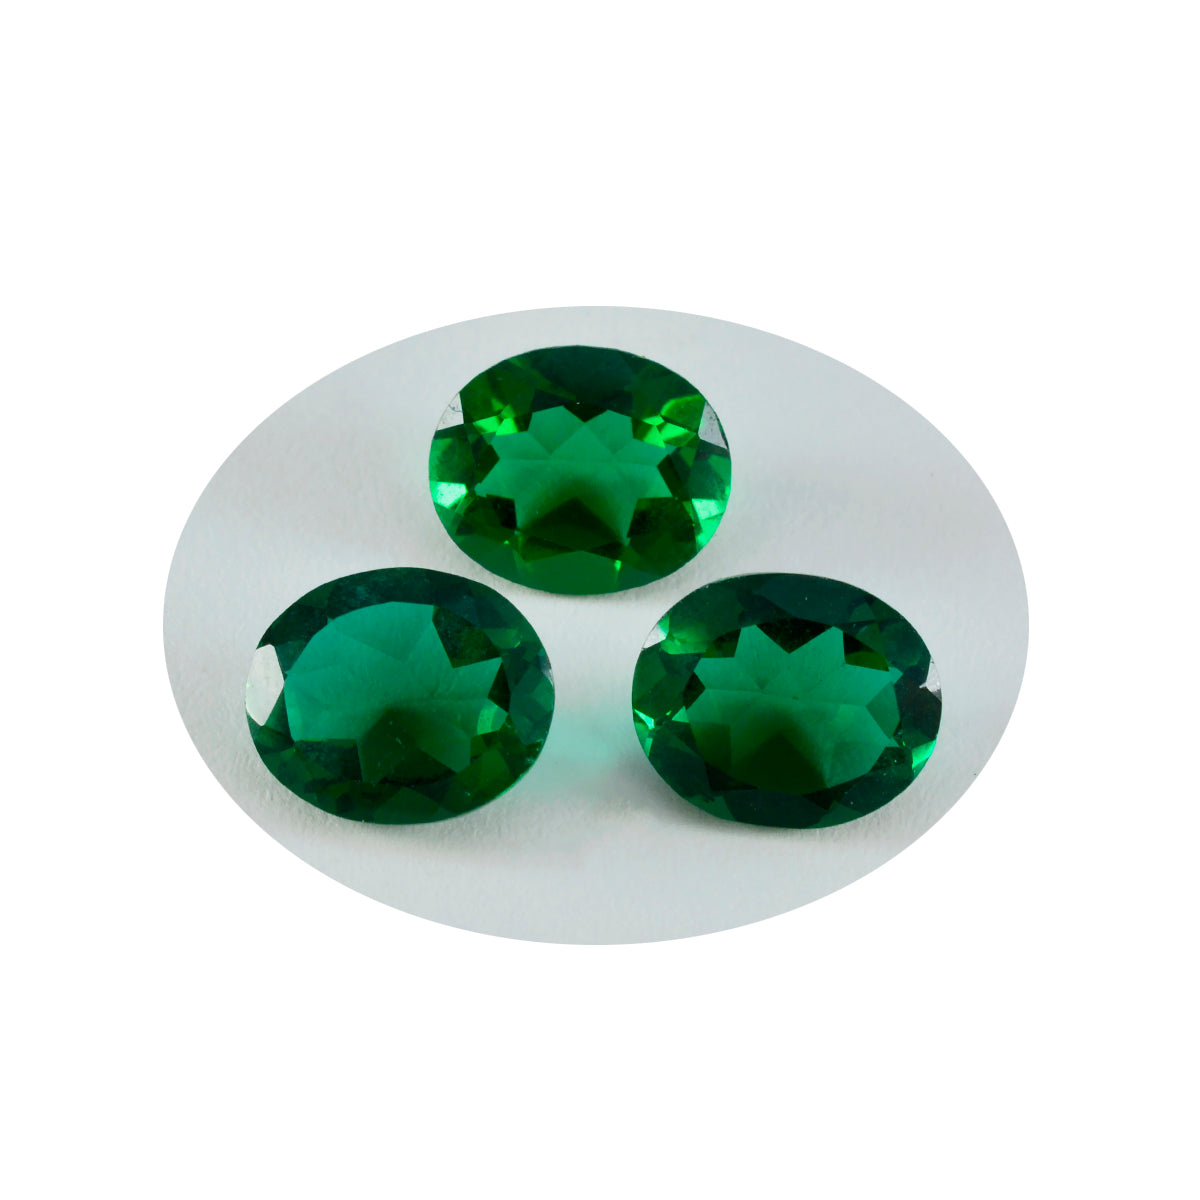 Riyogems 1 Stück grüner Smaragd, CZ, facettiert, 10 x 12 mm, ovale Form, Edelstein von ausgezeichneter Qualität